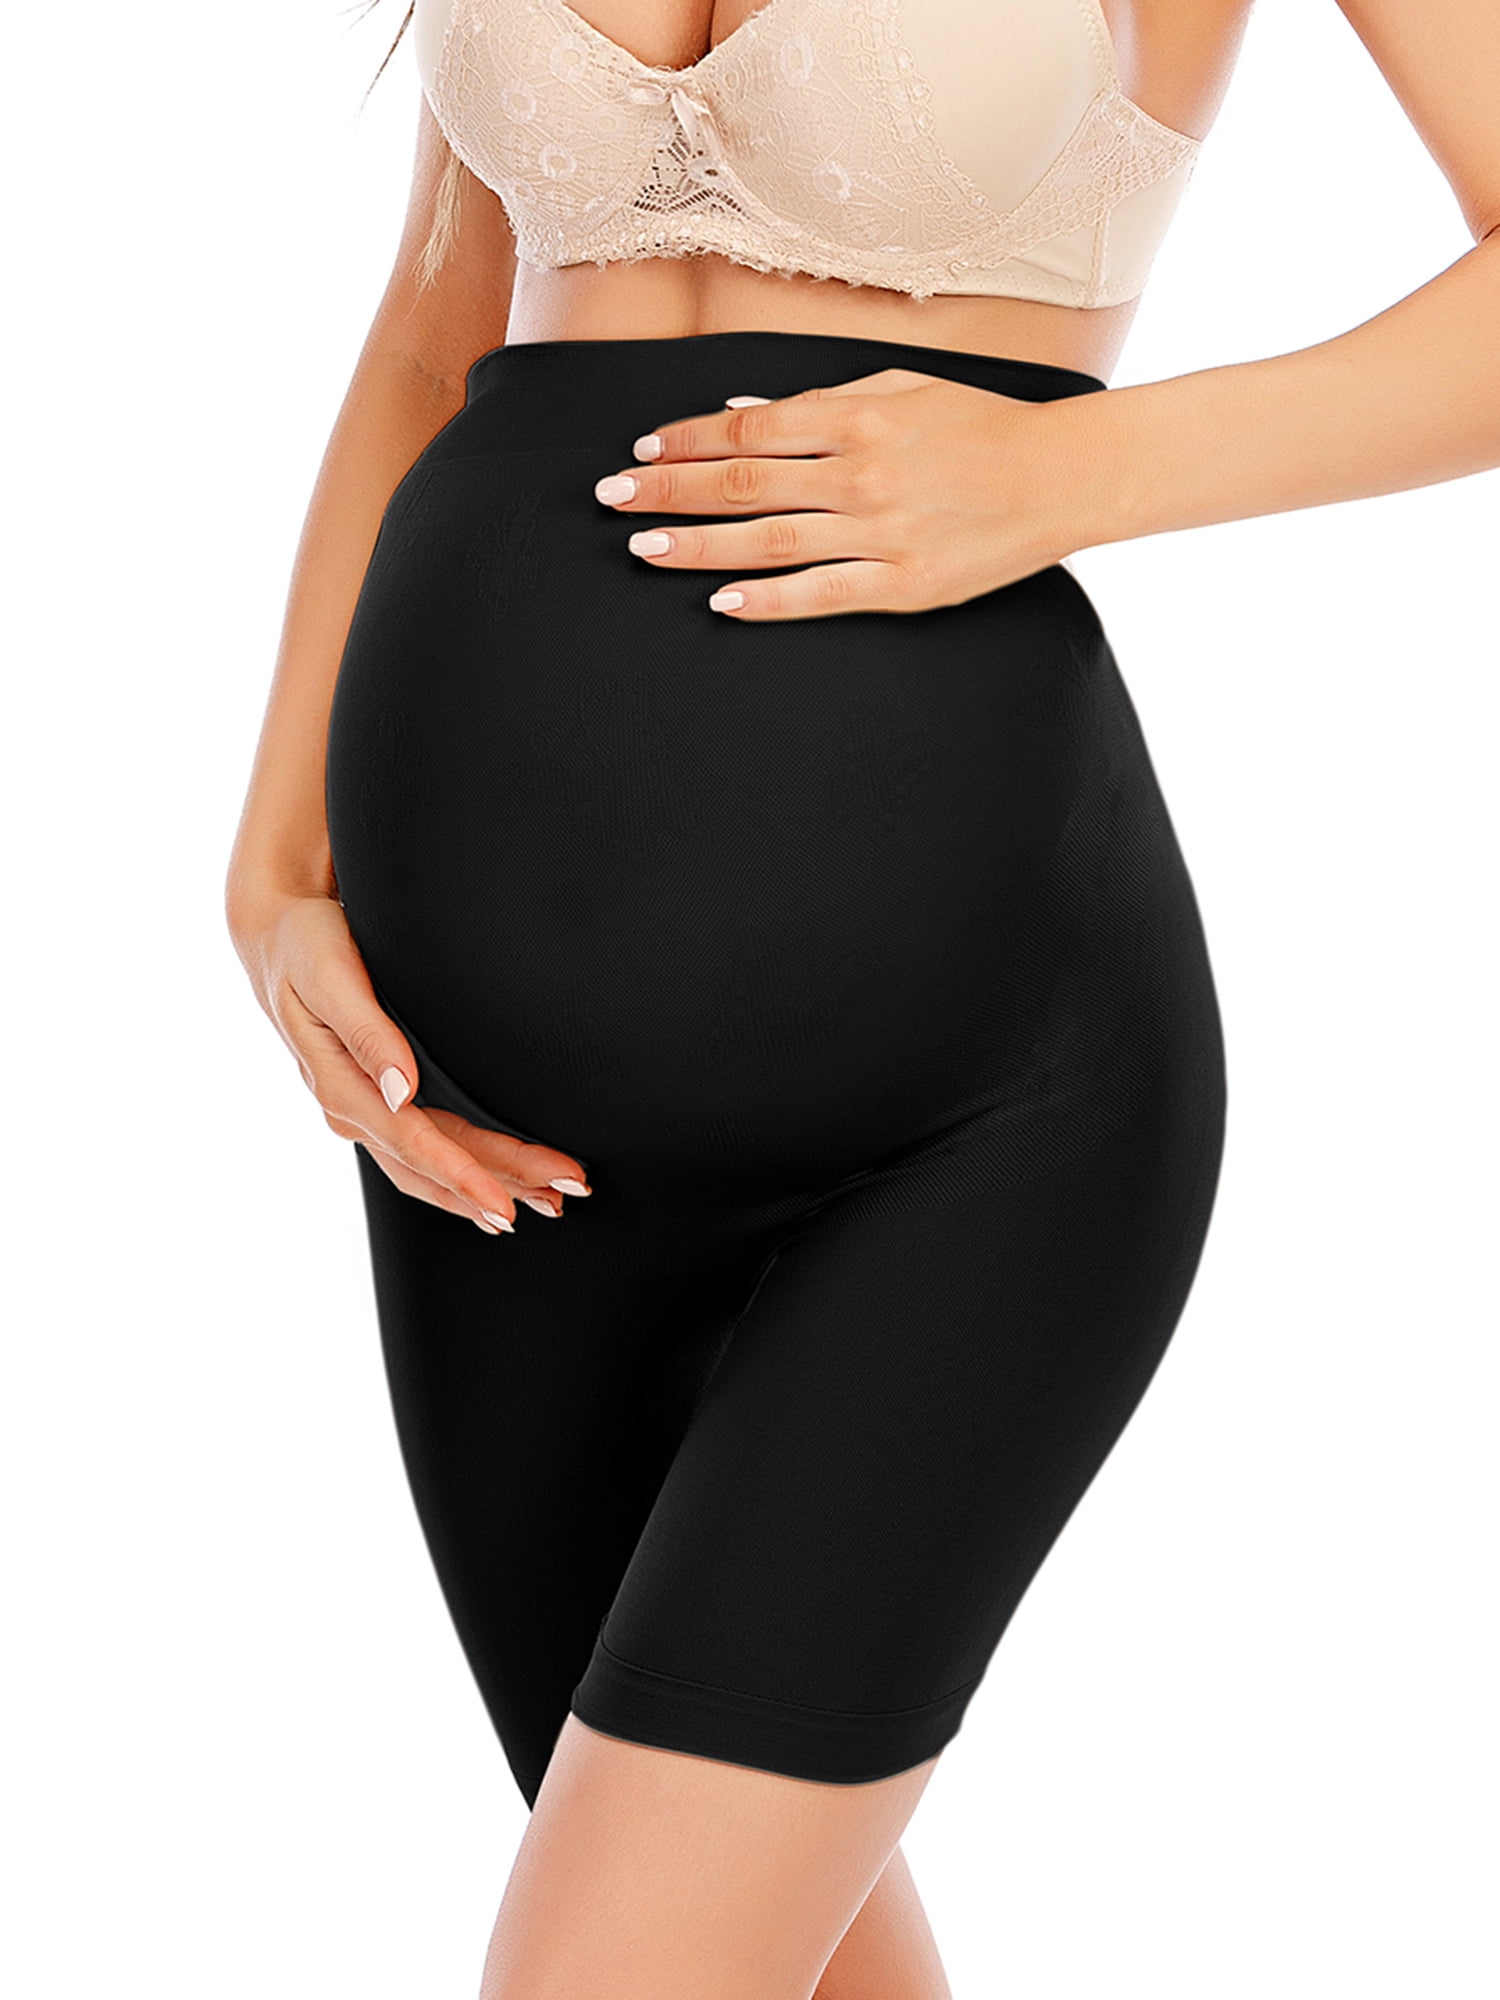 Women's Maternity Shapewear Belly Support High Waist Pregnancy Panties Underwear